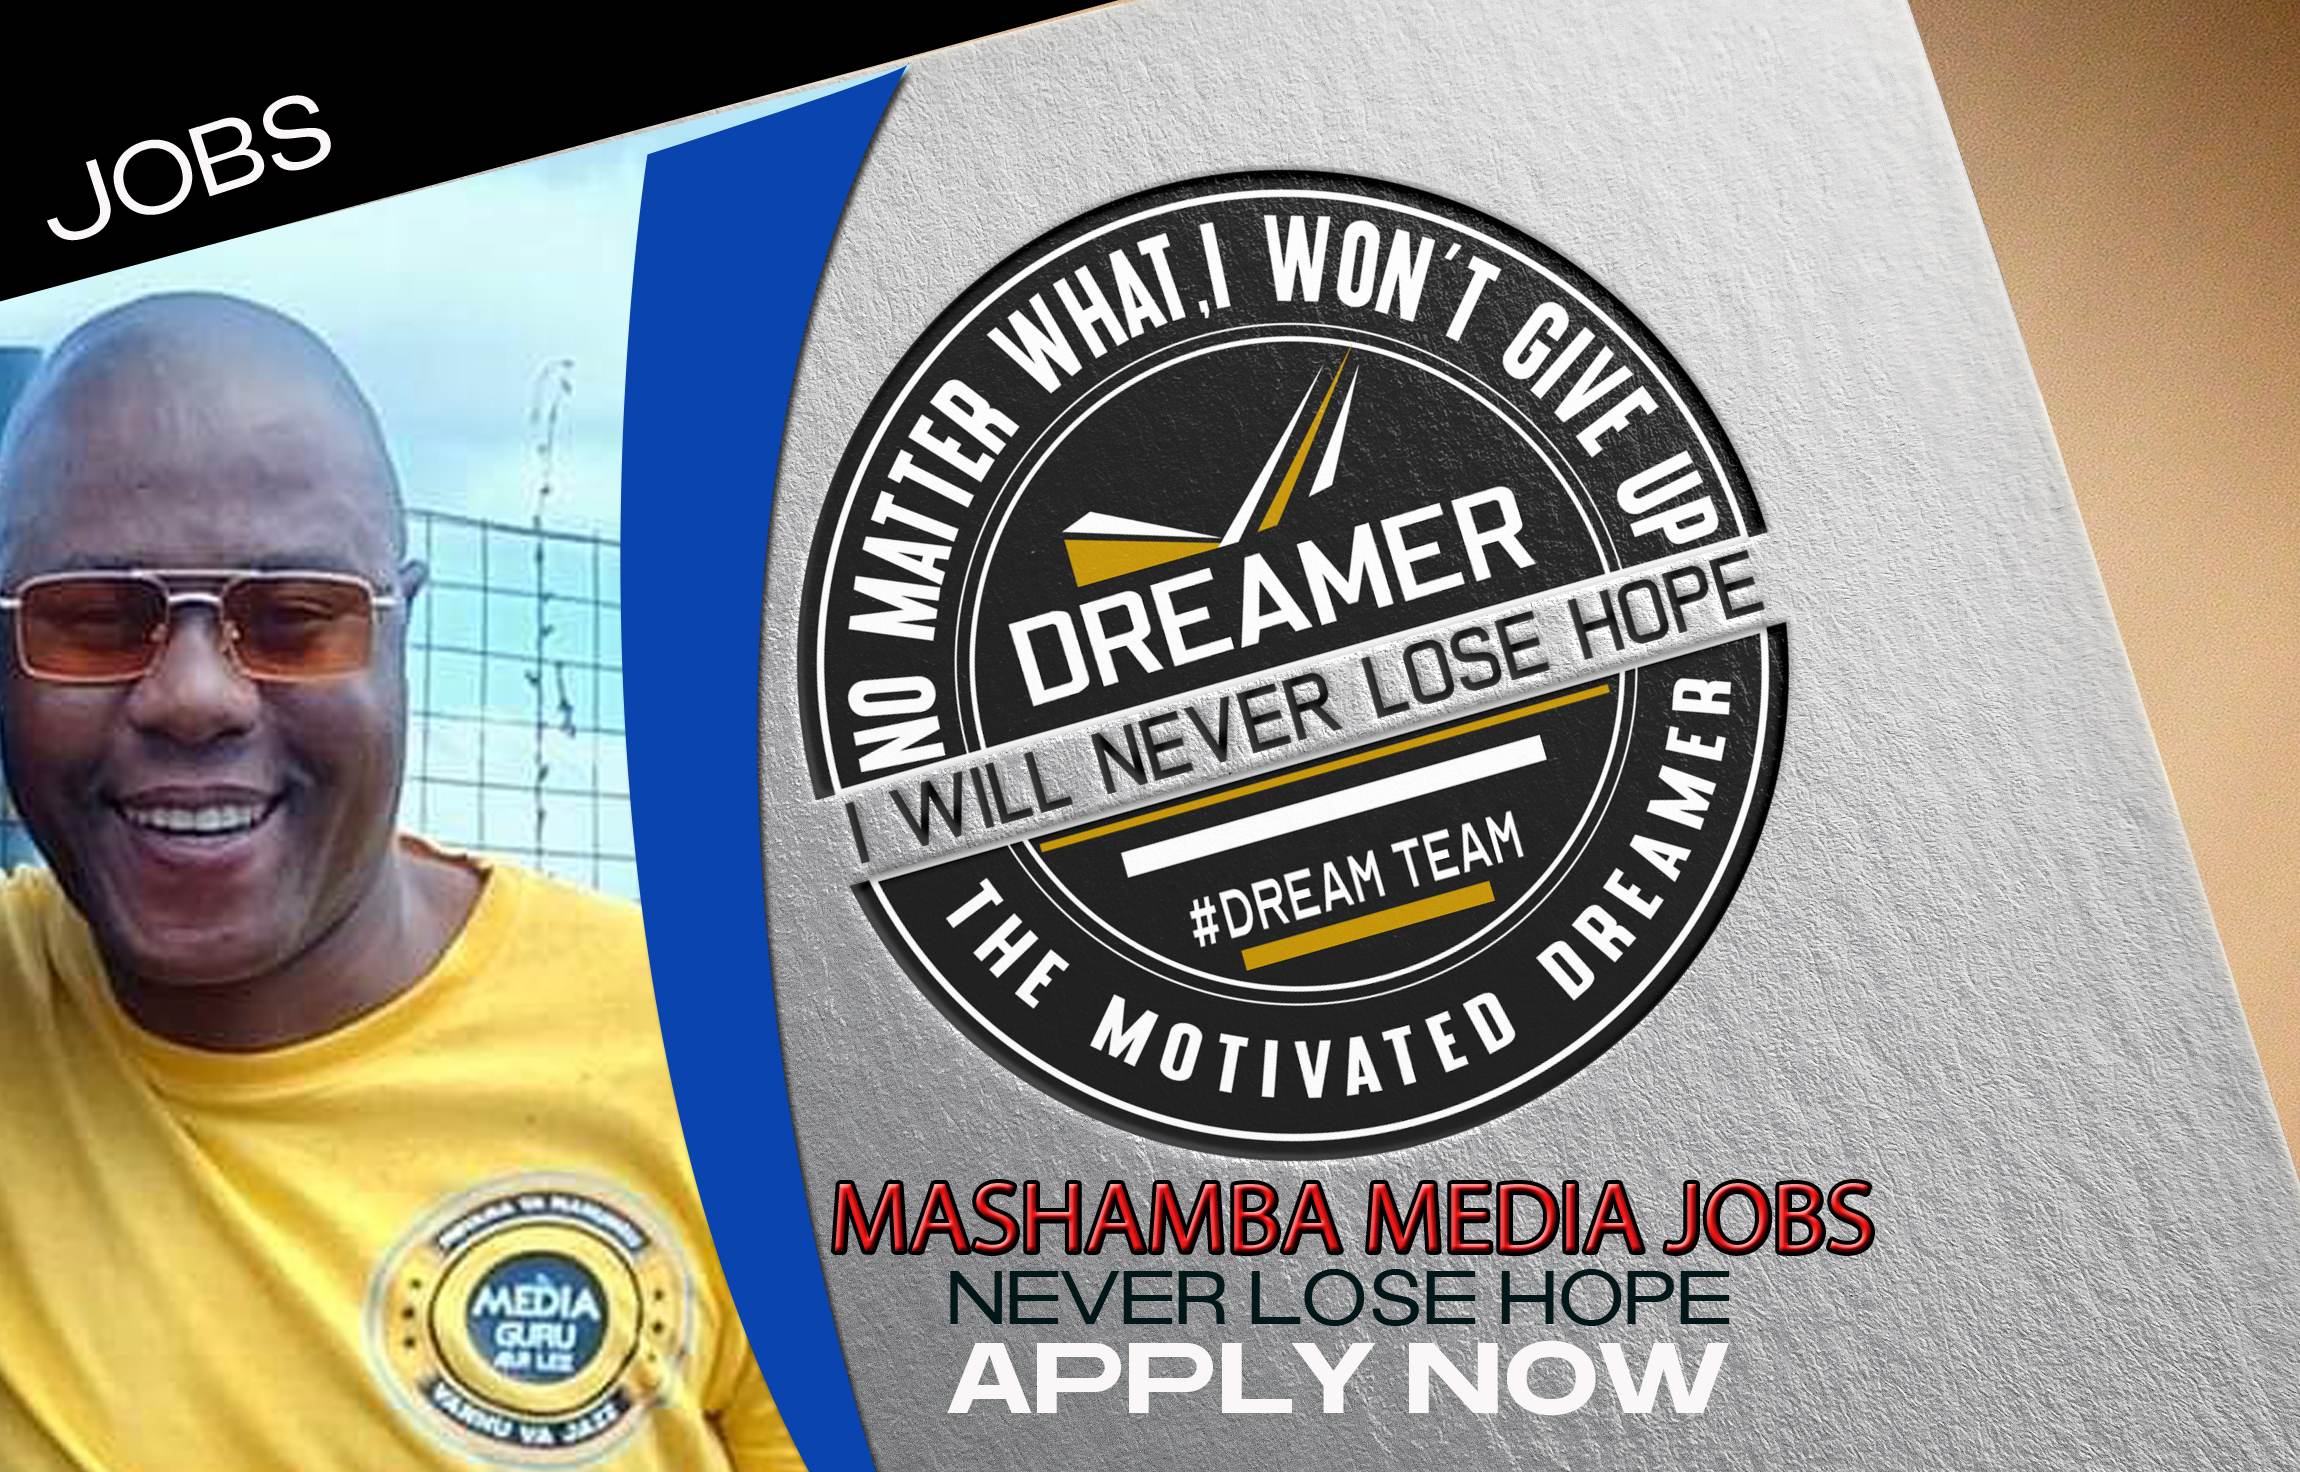 MASHAMBA MEDIA HAS MANY JOBS FOR YOU. CLICK ON THE LINK